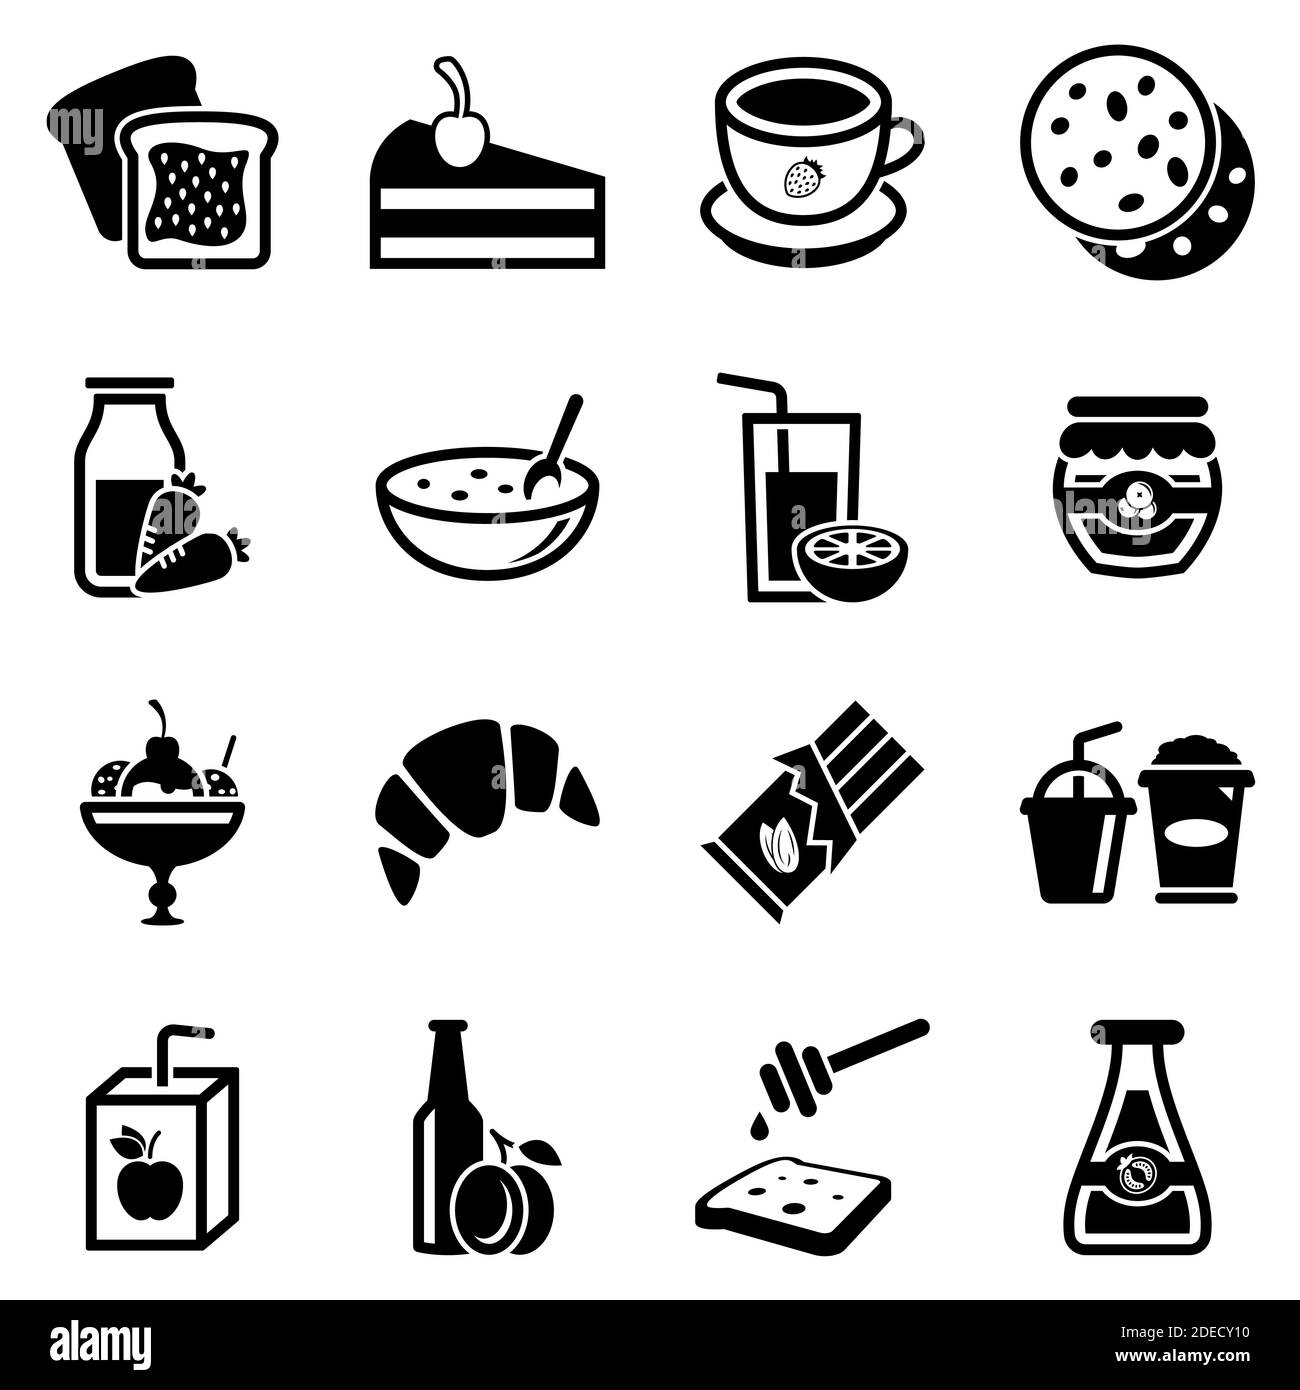 Ensemble d'icônes simples sur un thème Sweets, boissons, nourriture, vecteur, design, collection, plat, signe, symbole, élément, objet, illustration. Les icônes noires s'isolent Illustration de Vecteur